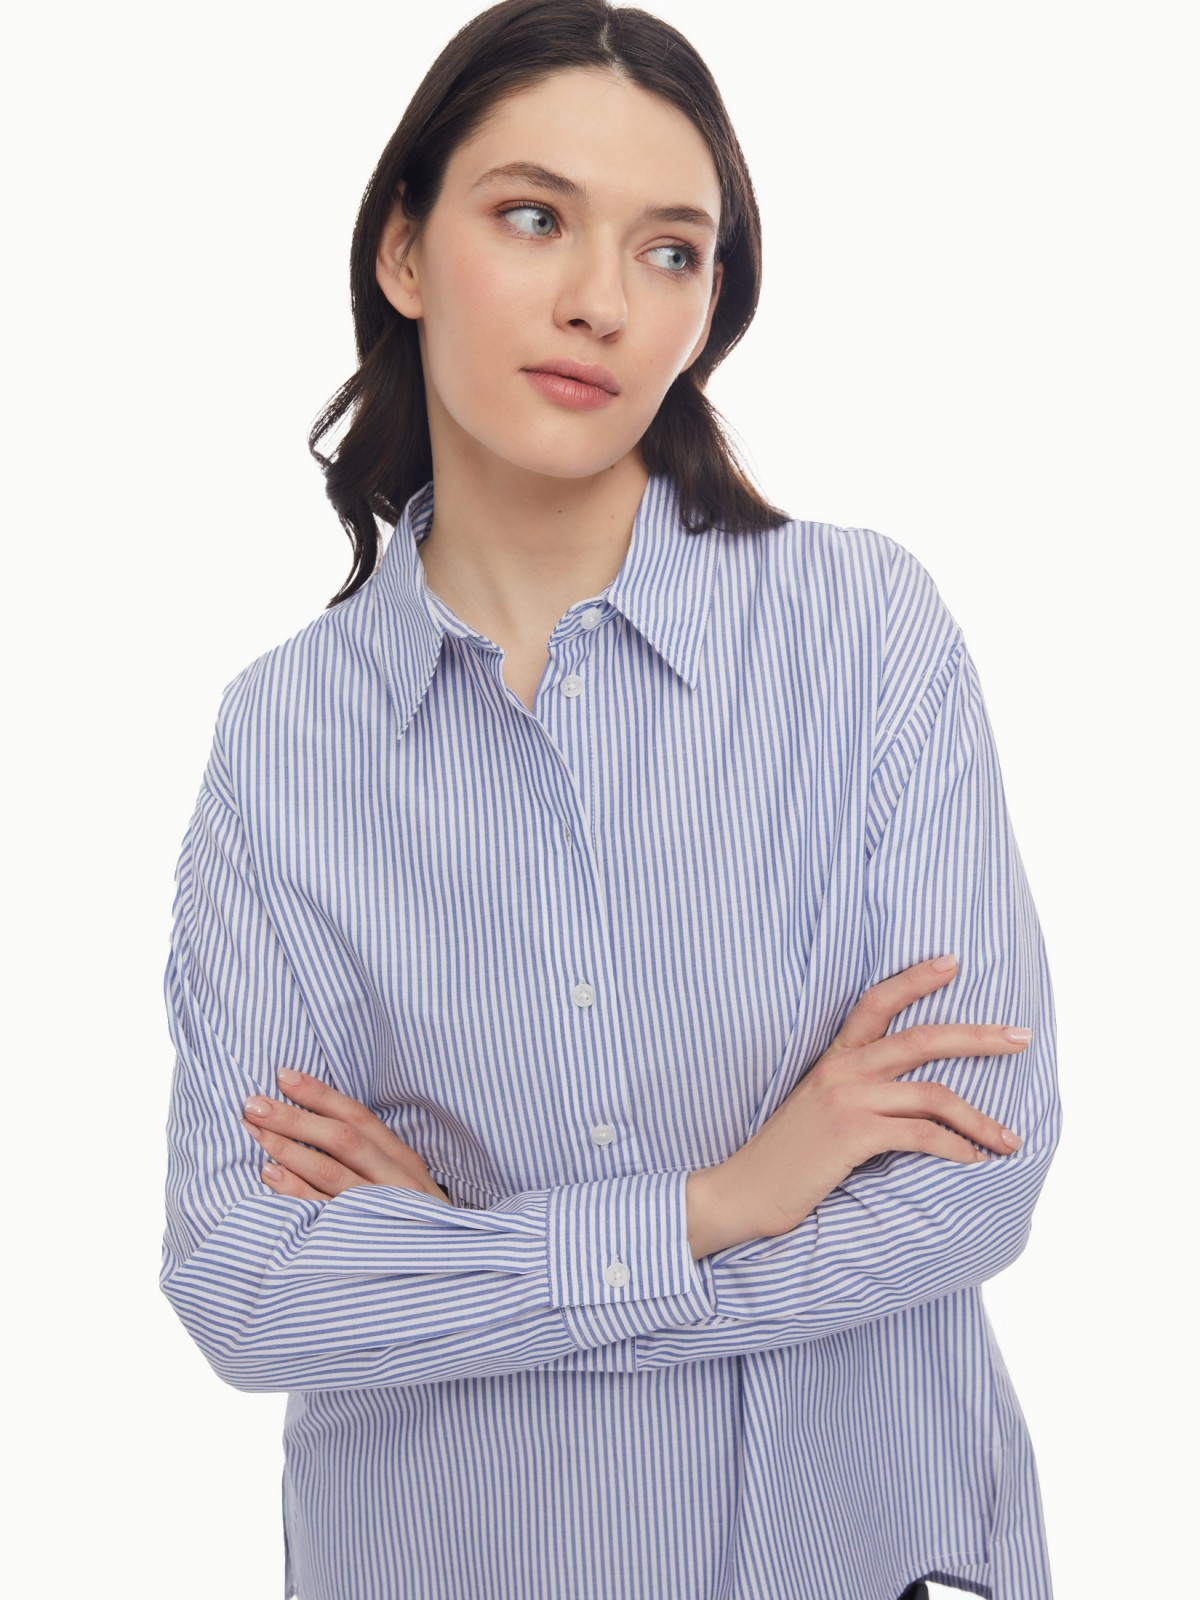 Блузка-рубашка в спортивном стиле с узором в полоску zolla 024131159053, цвет светло-голубой, размер XS - фото 1